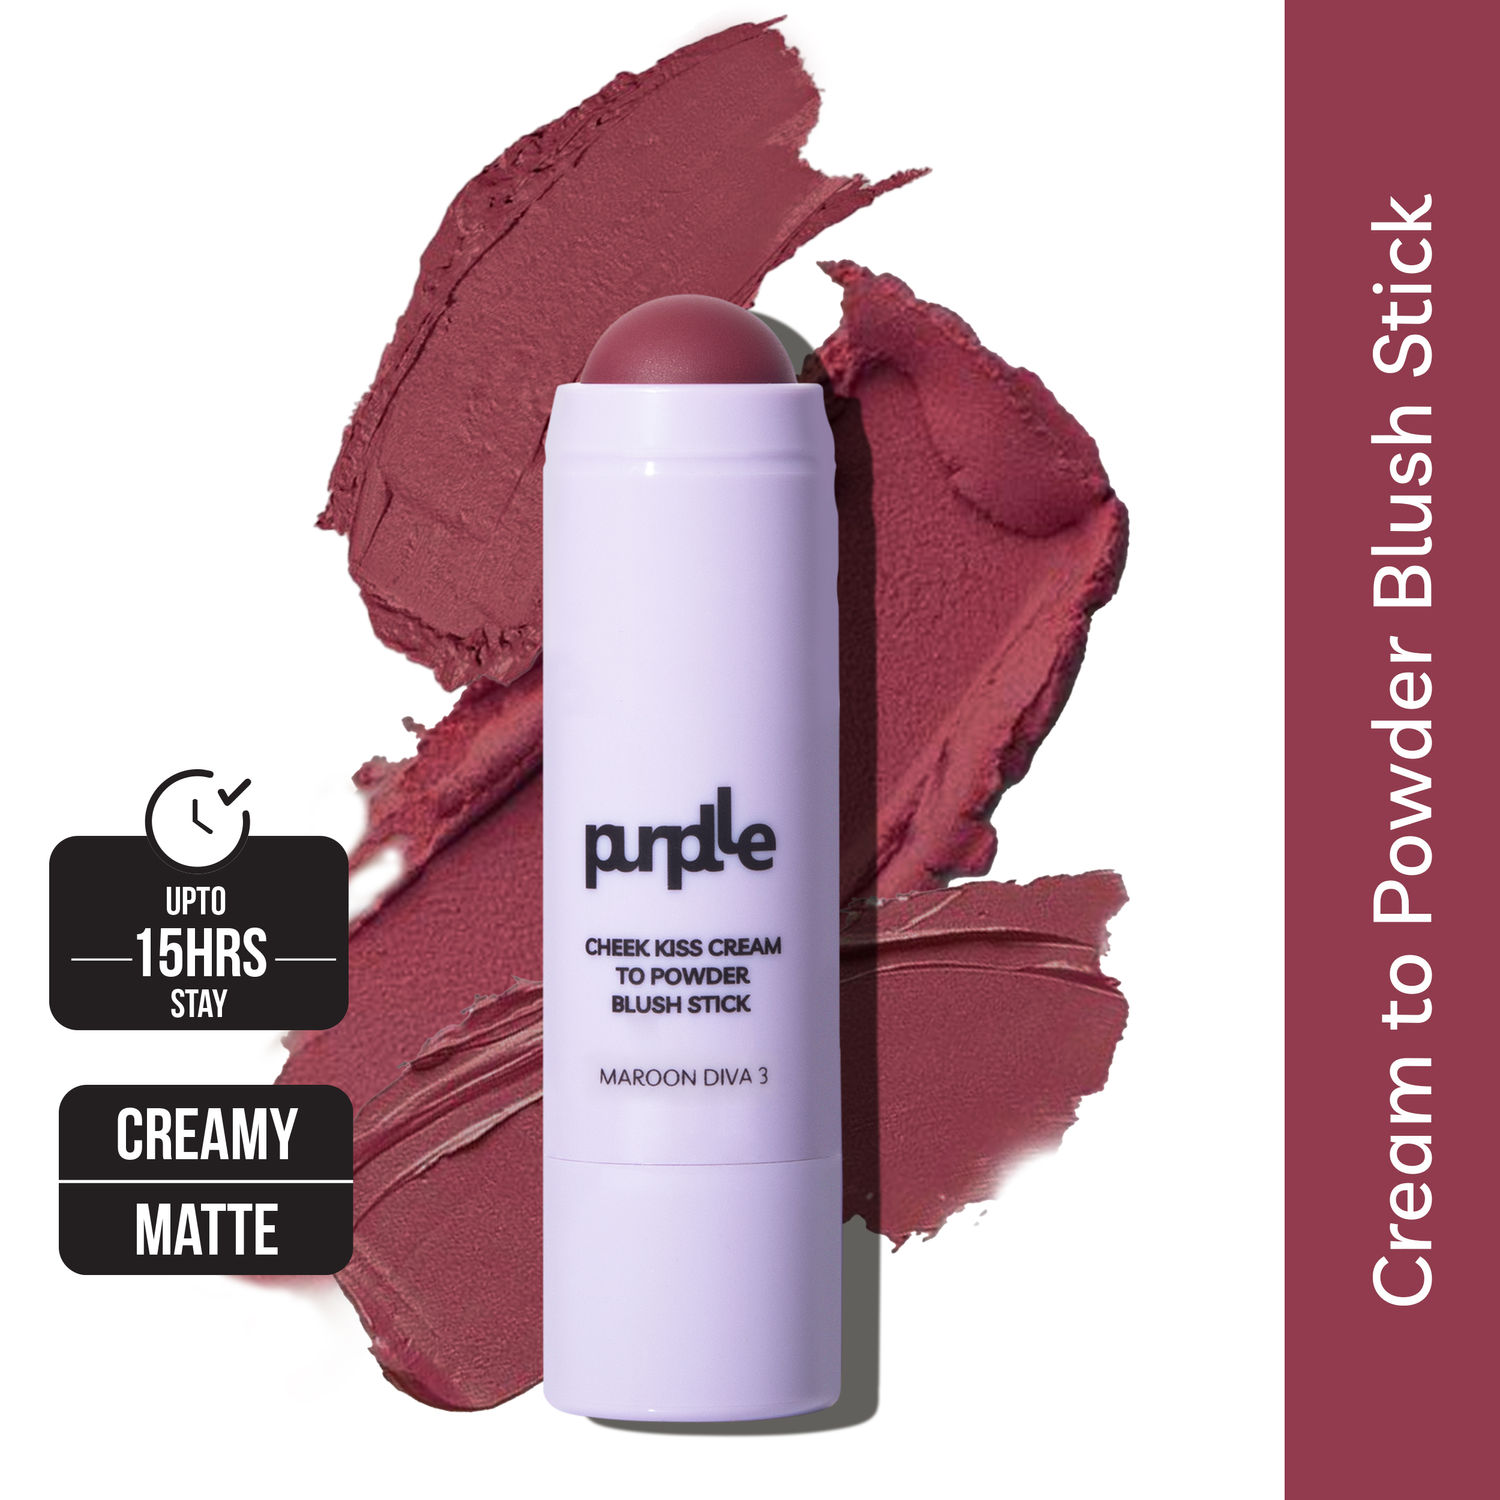 Buy Purplle Cheek Kiss Cream to Powder Blush Stick Maroon Diva 3 - Purplle